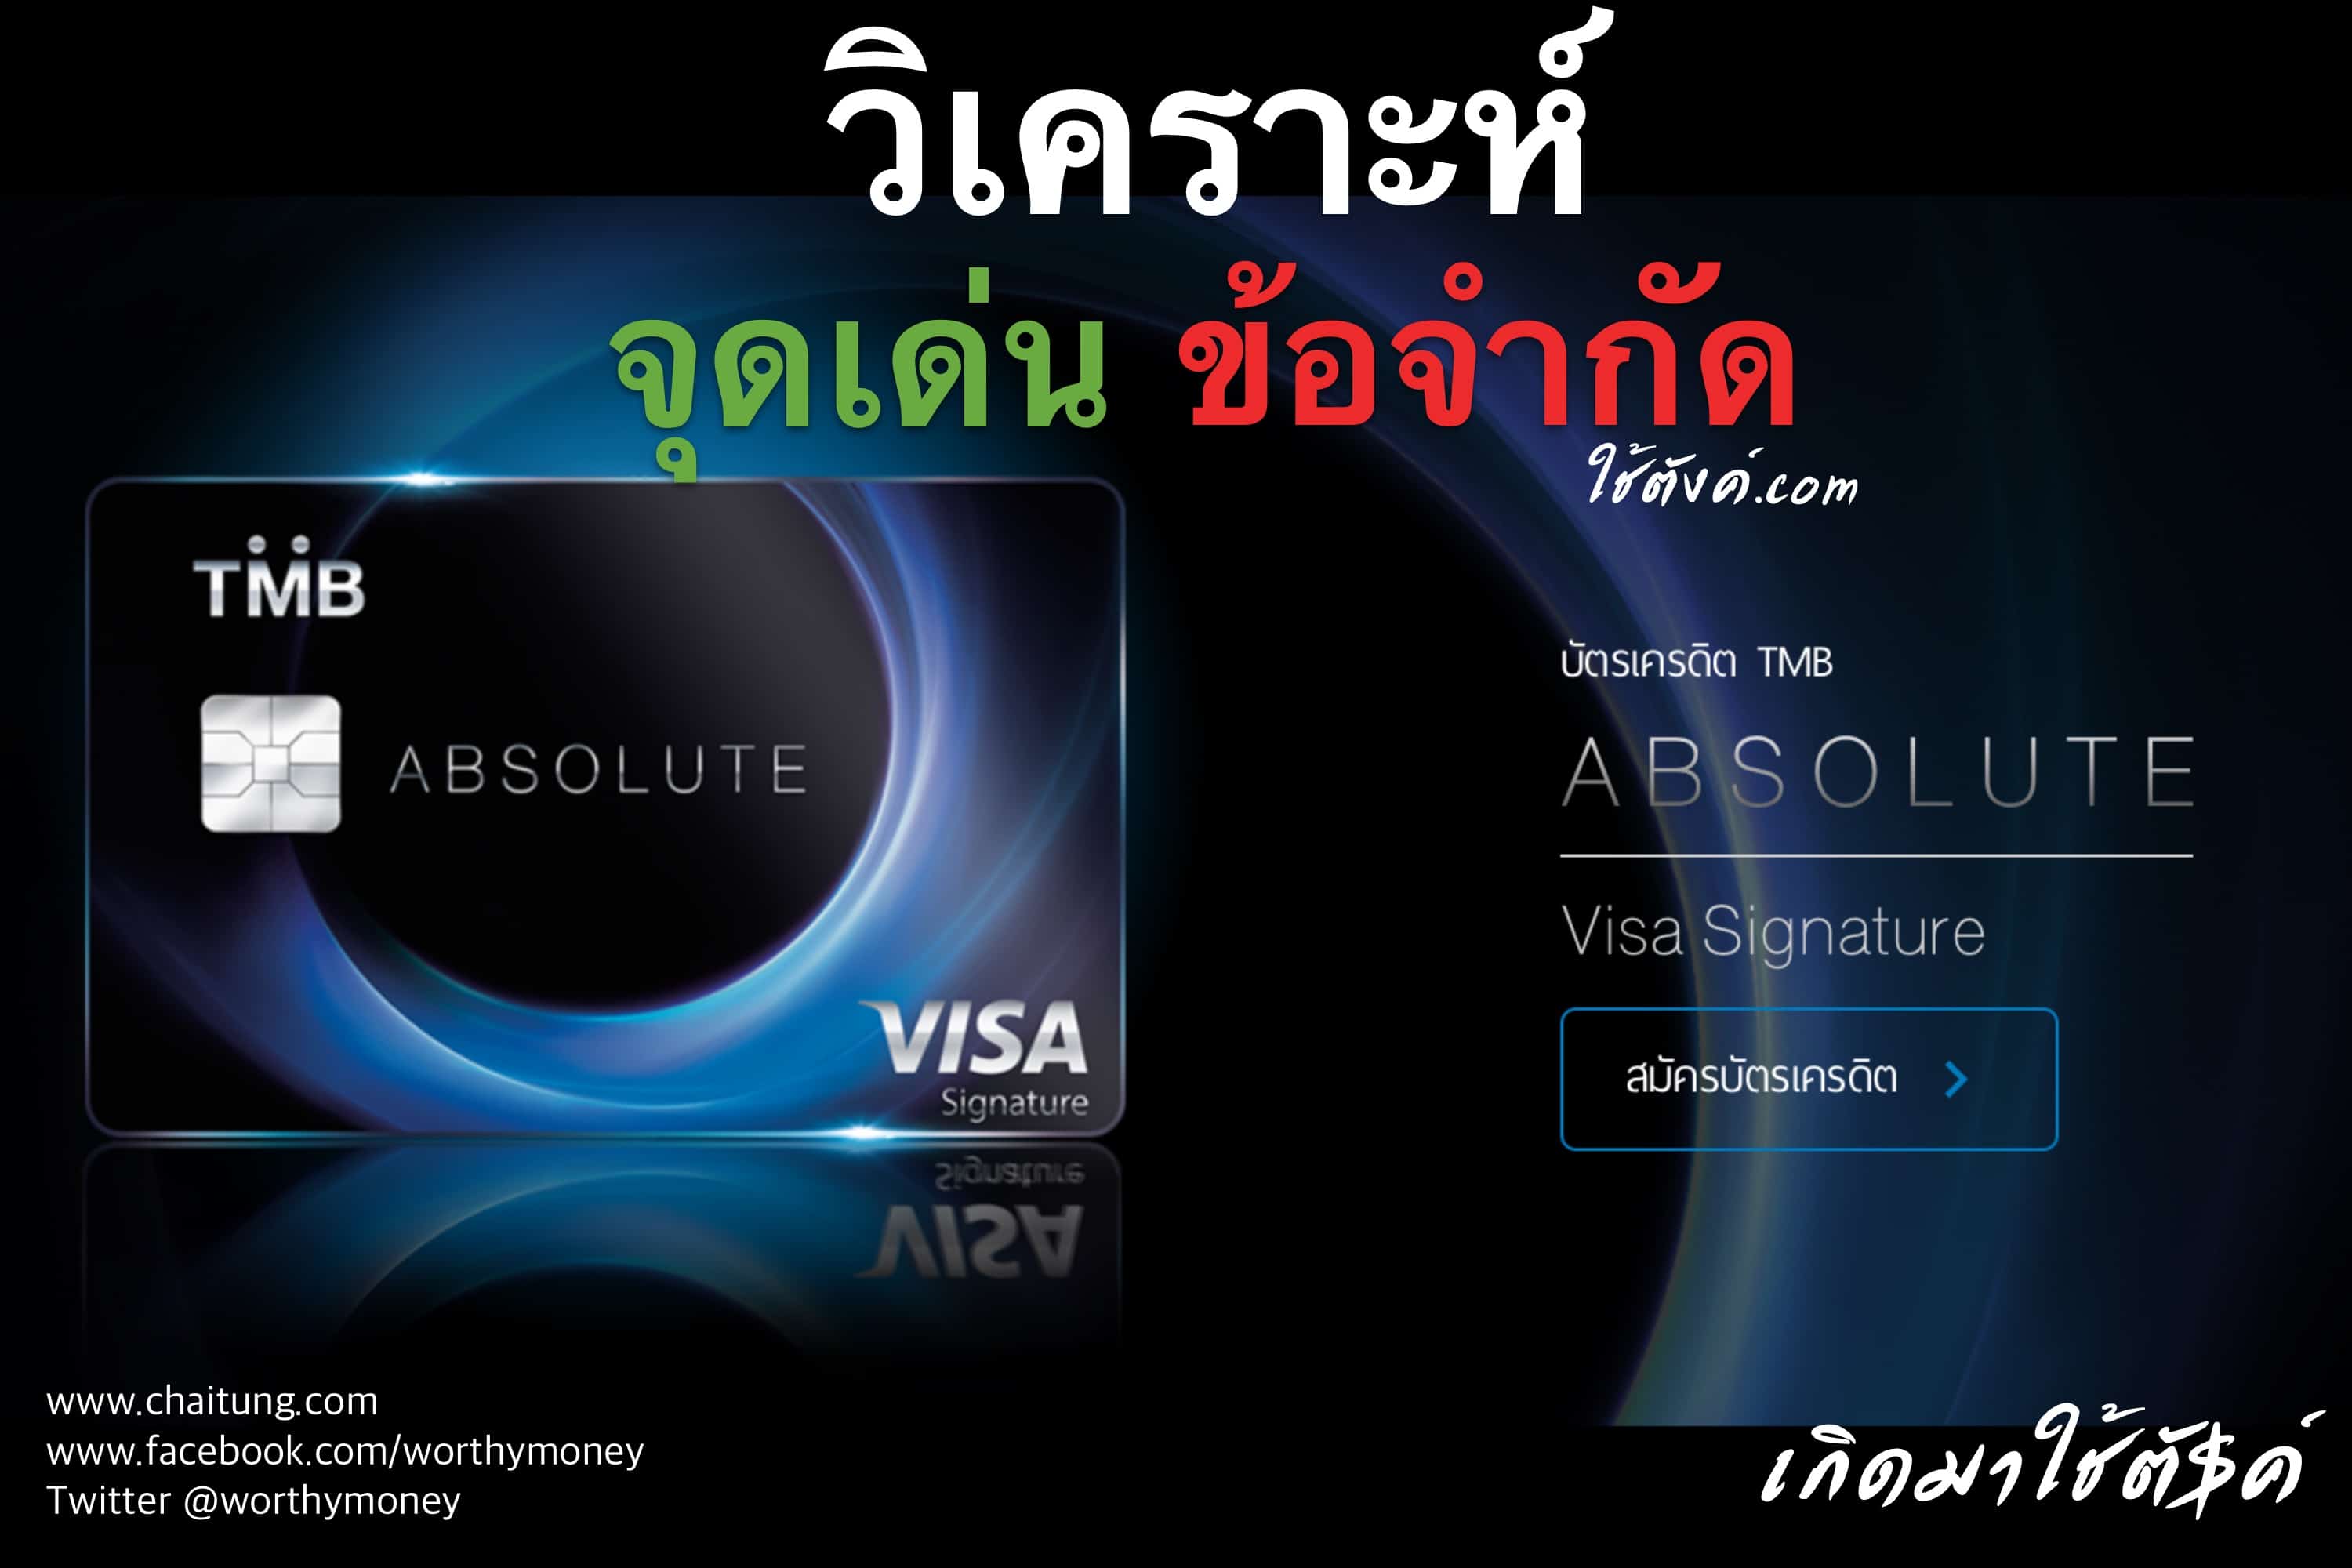 วิเคราะห์] บัตรเครดิต Tmb Absolute - Chaitung.Com - ใช้ตังค์.Com